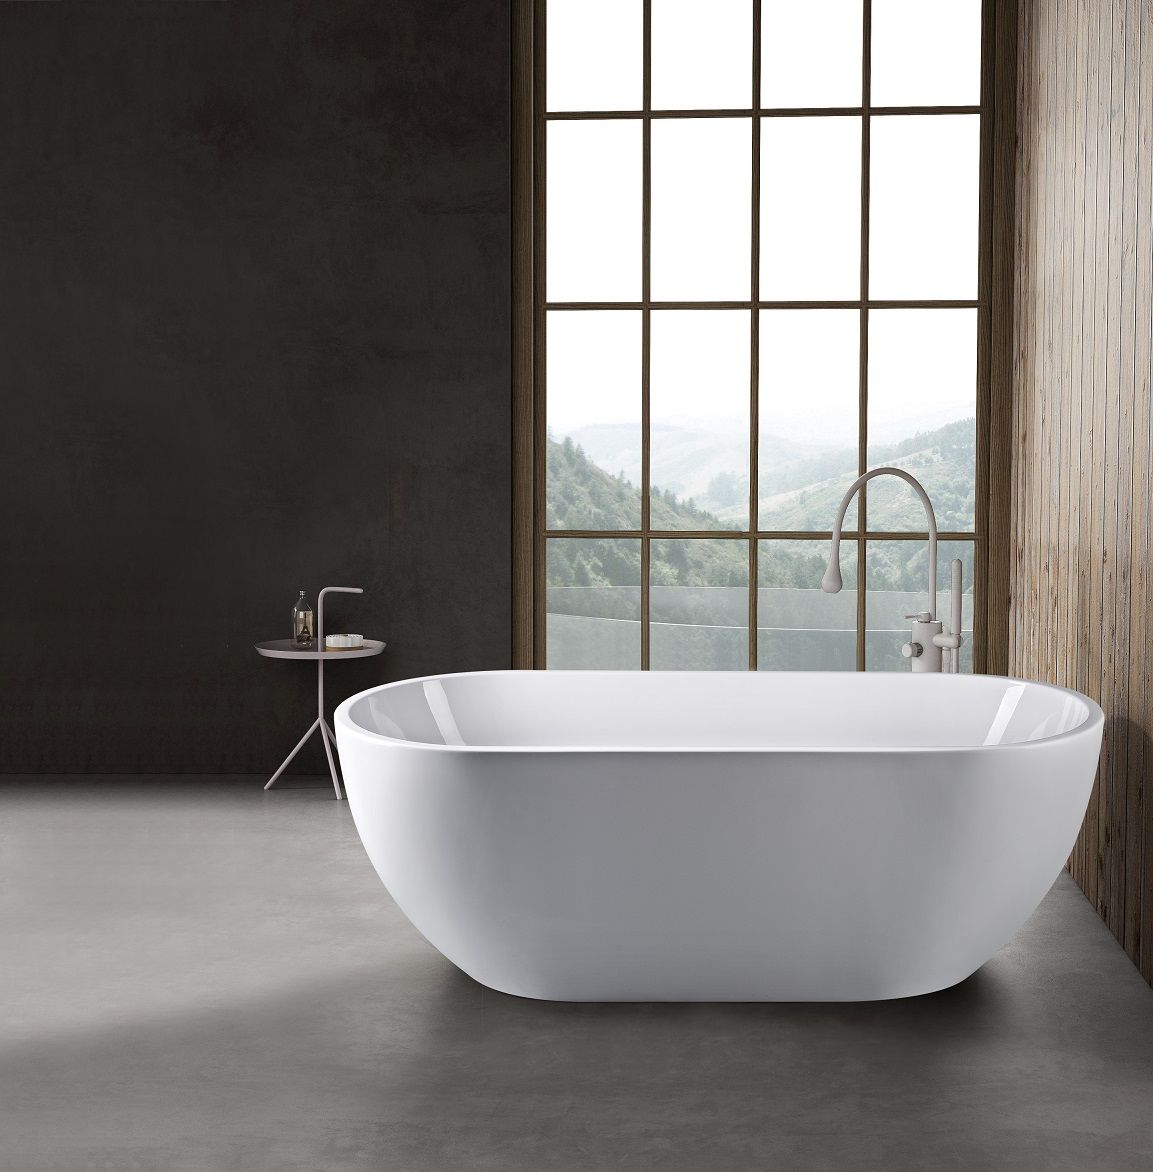 Акриловая ванна Art&Max AM-218-1500-750 150x75